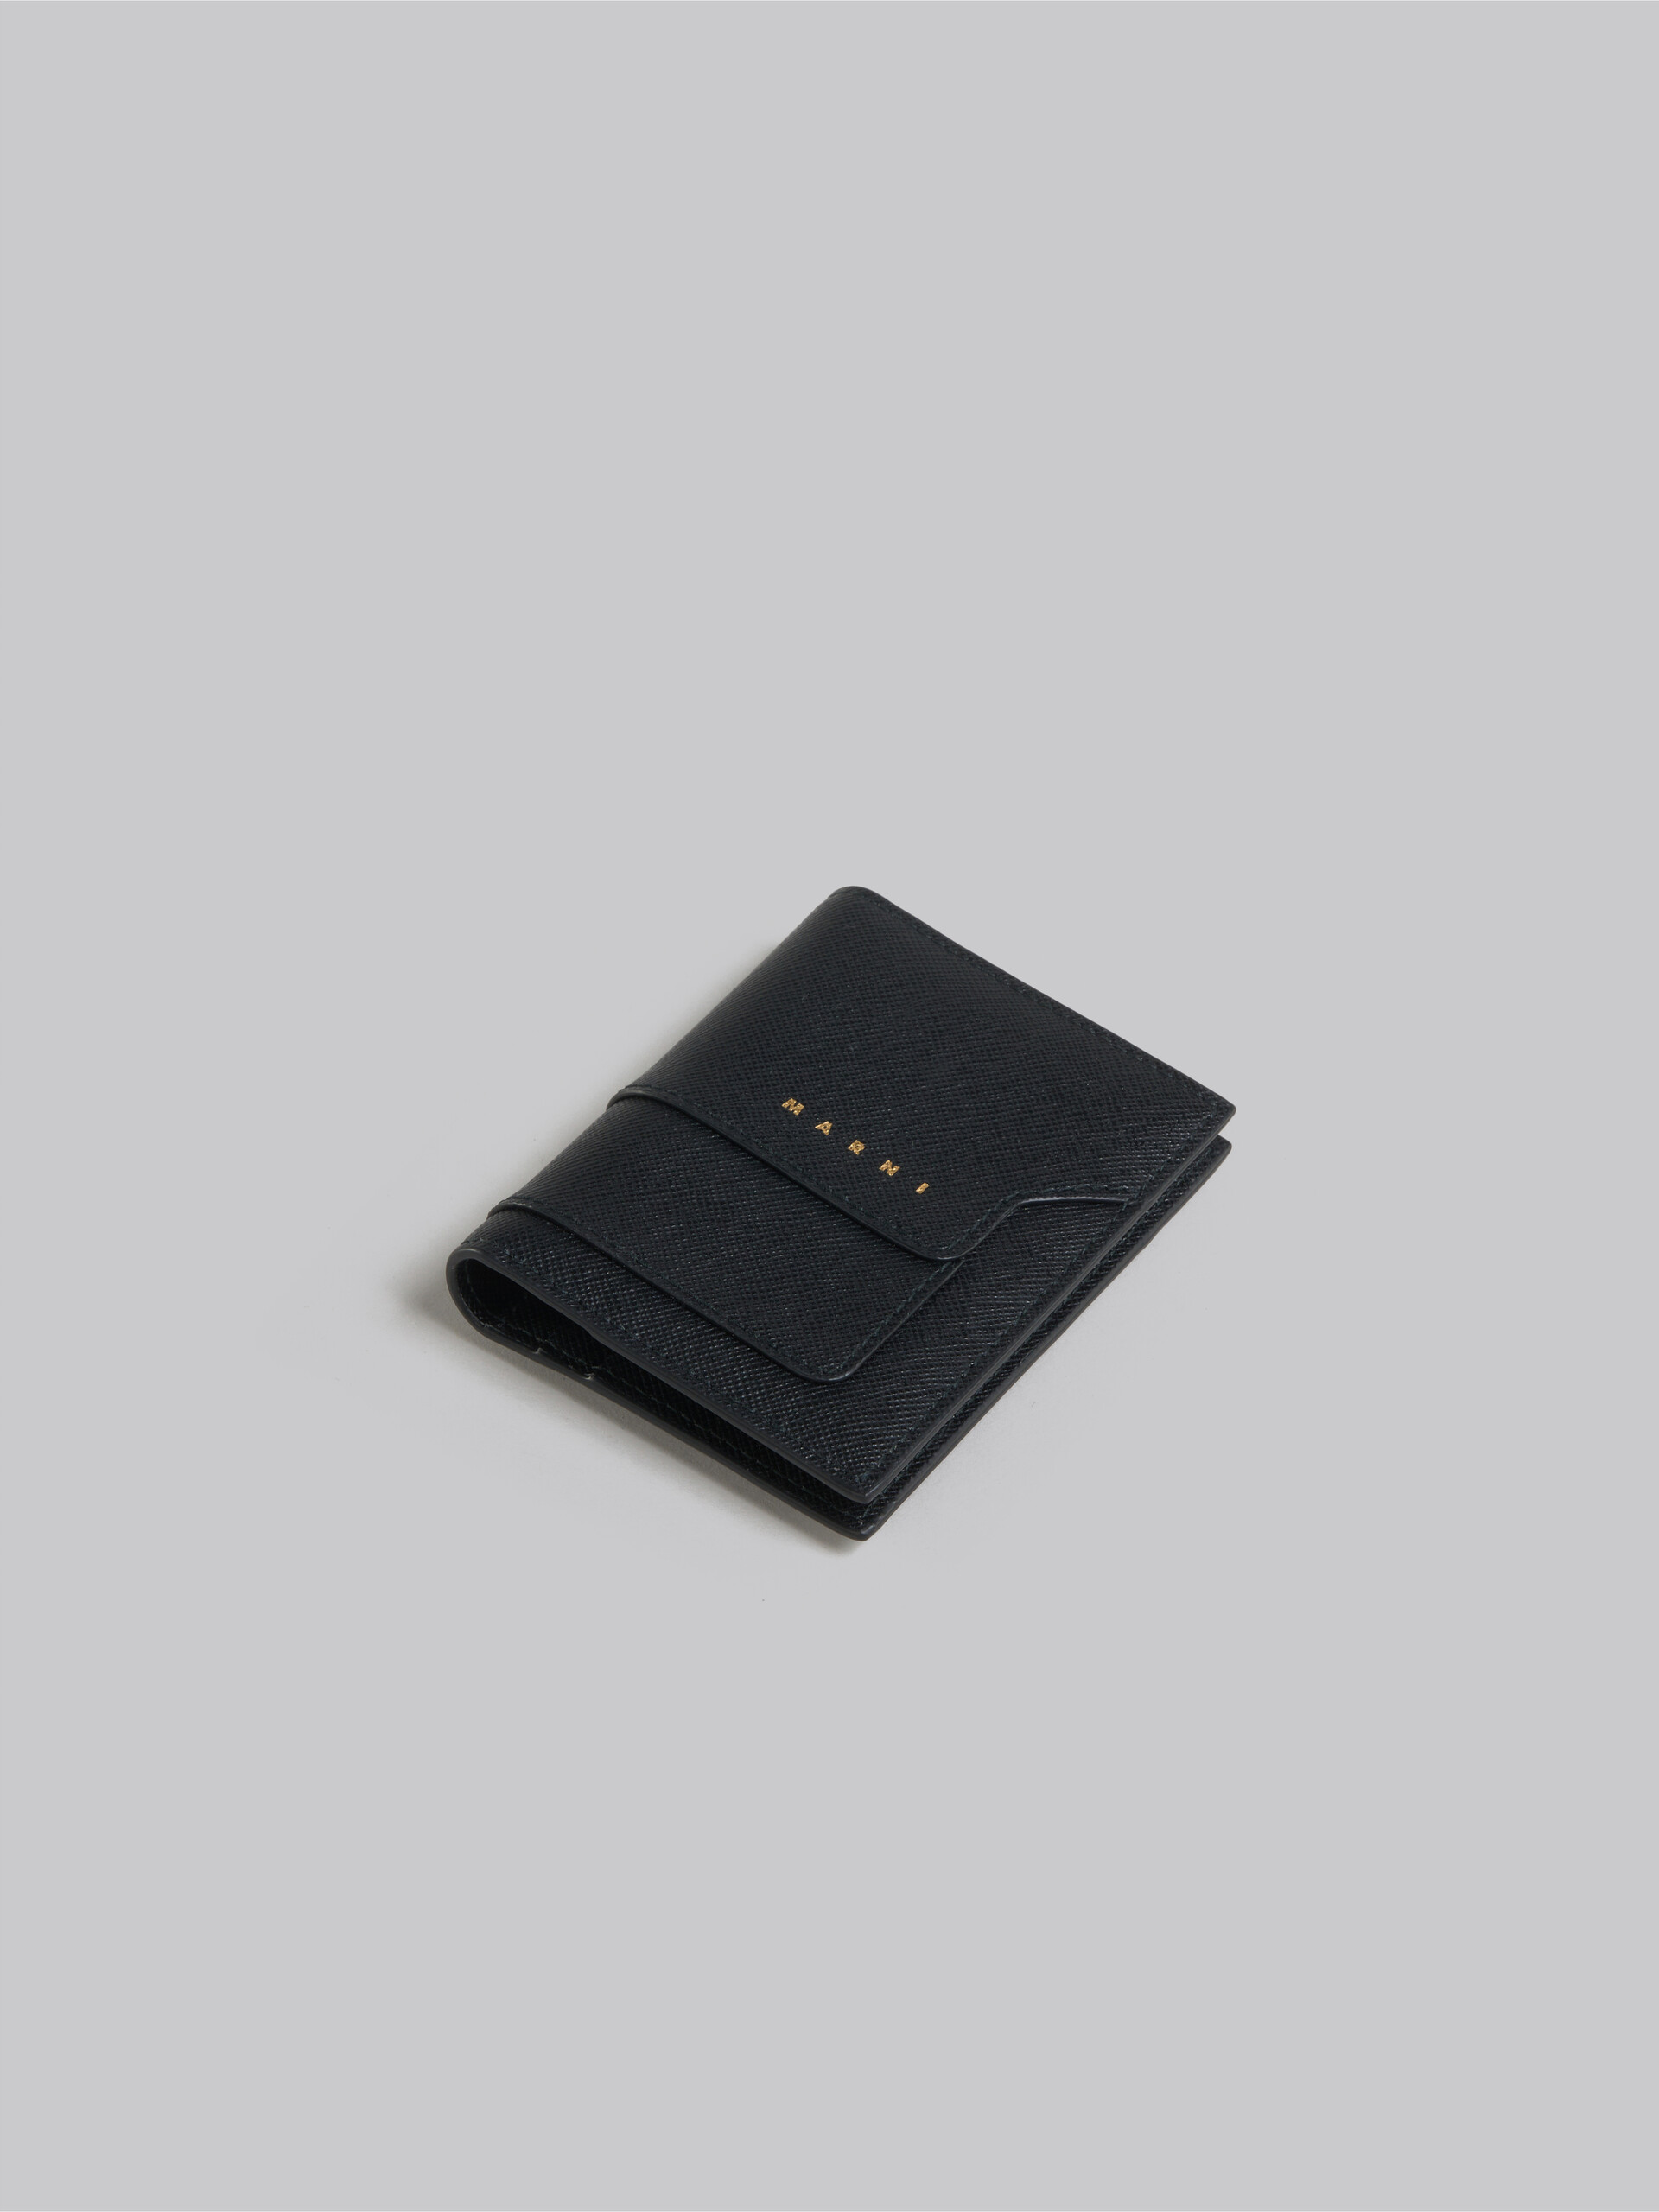 Schwarzer Kartenhalter aus Saffiano-Leder - Brieftaschen - Image 4